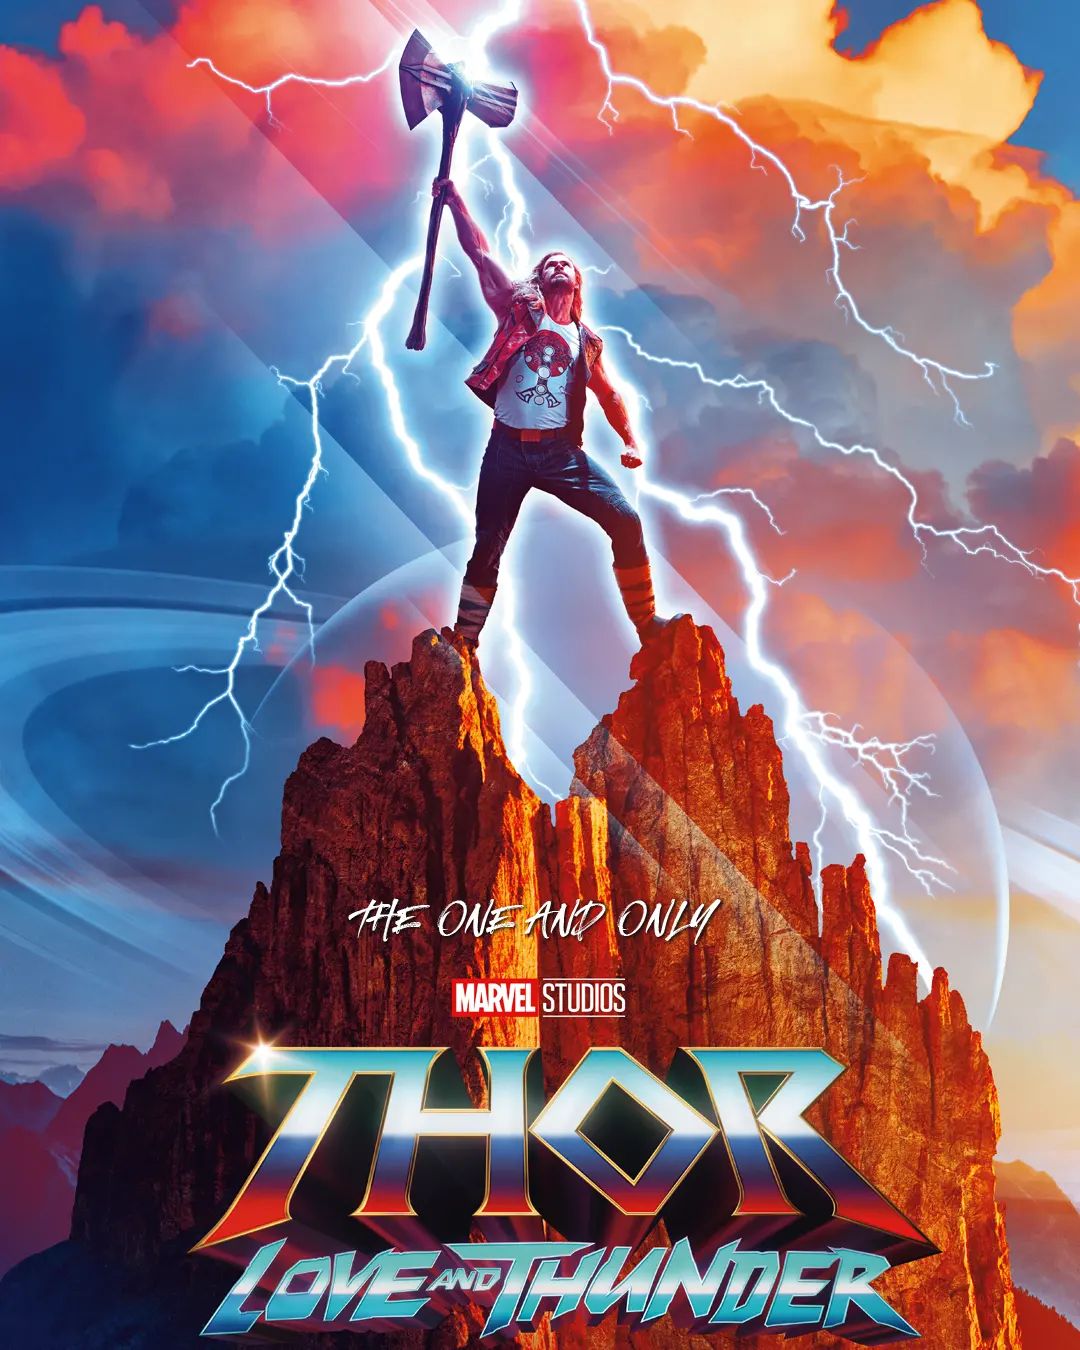 Marvel uutuus! ❤️
Thor: love & thunder ⚡

Näytökset kotisivulla 8-14.7 ajalle. Mukavaa leffahetkeä!

#pajakkakino #elokuvissa #tervetuloaelokuviin #visitkuhmo #visitkainuu